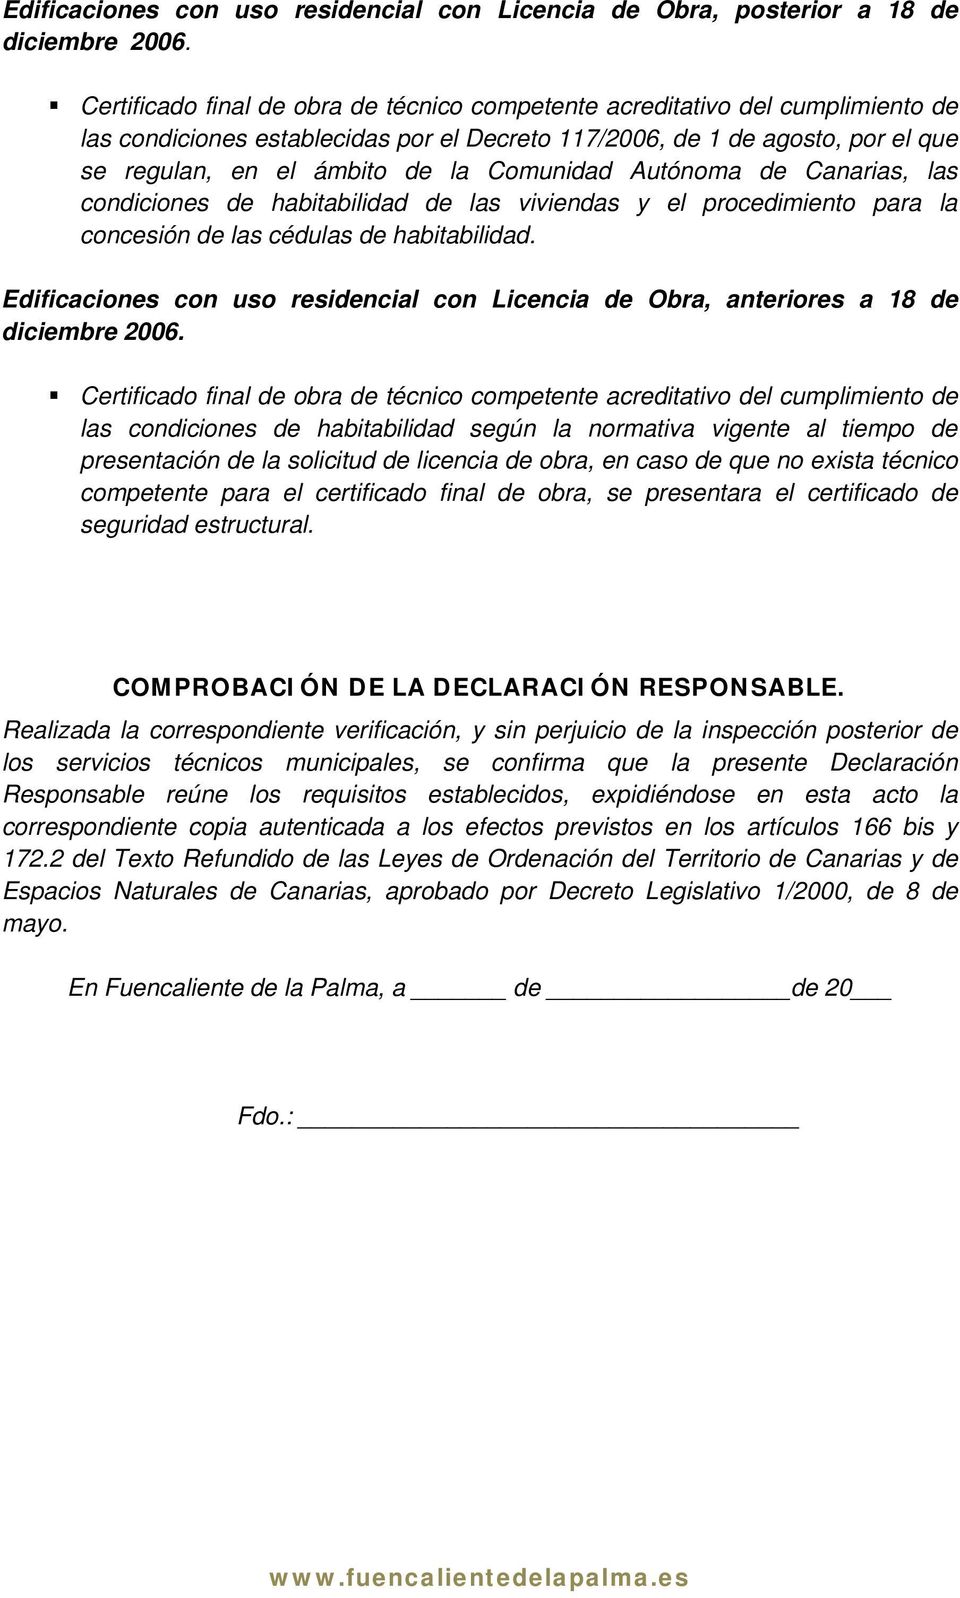 Comunidad Autónoma de Canarias, las condiciones de habitabilidad de las viviendas y el procedimiento para la concesión de las cédulas de habitabilidad.